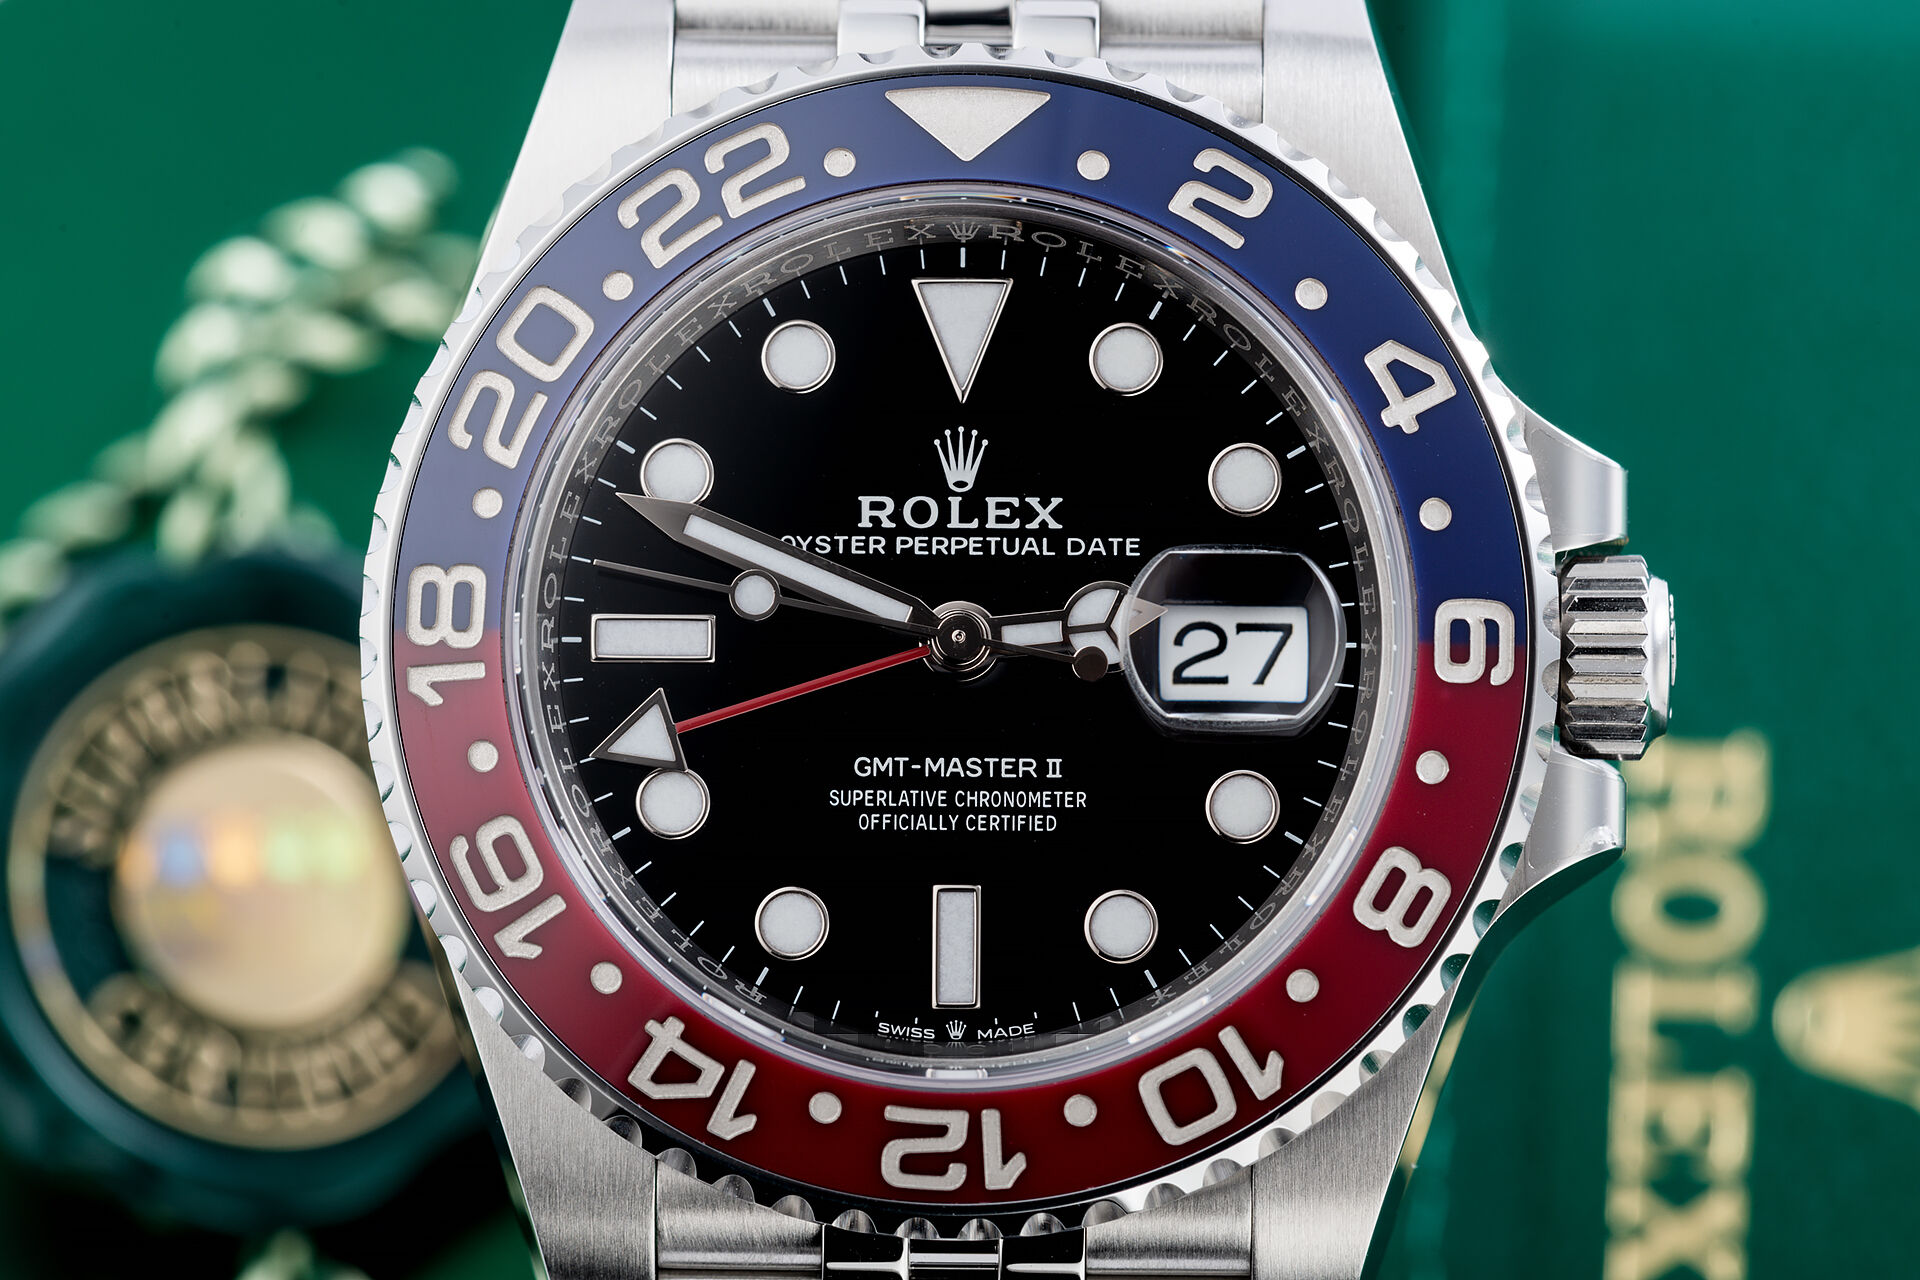 ref 126710BLRO | 'Brand New' 5 Year Warranty | Rolex GMT-Master II